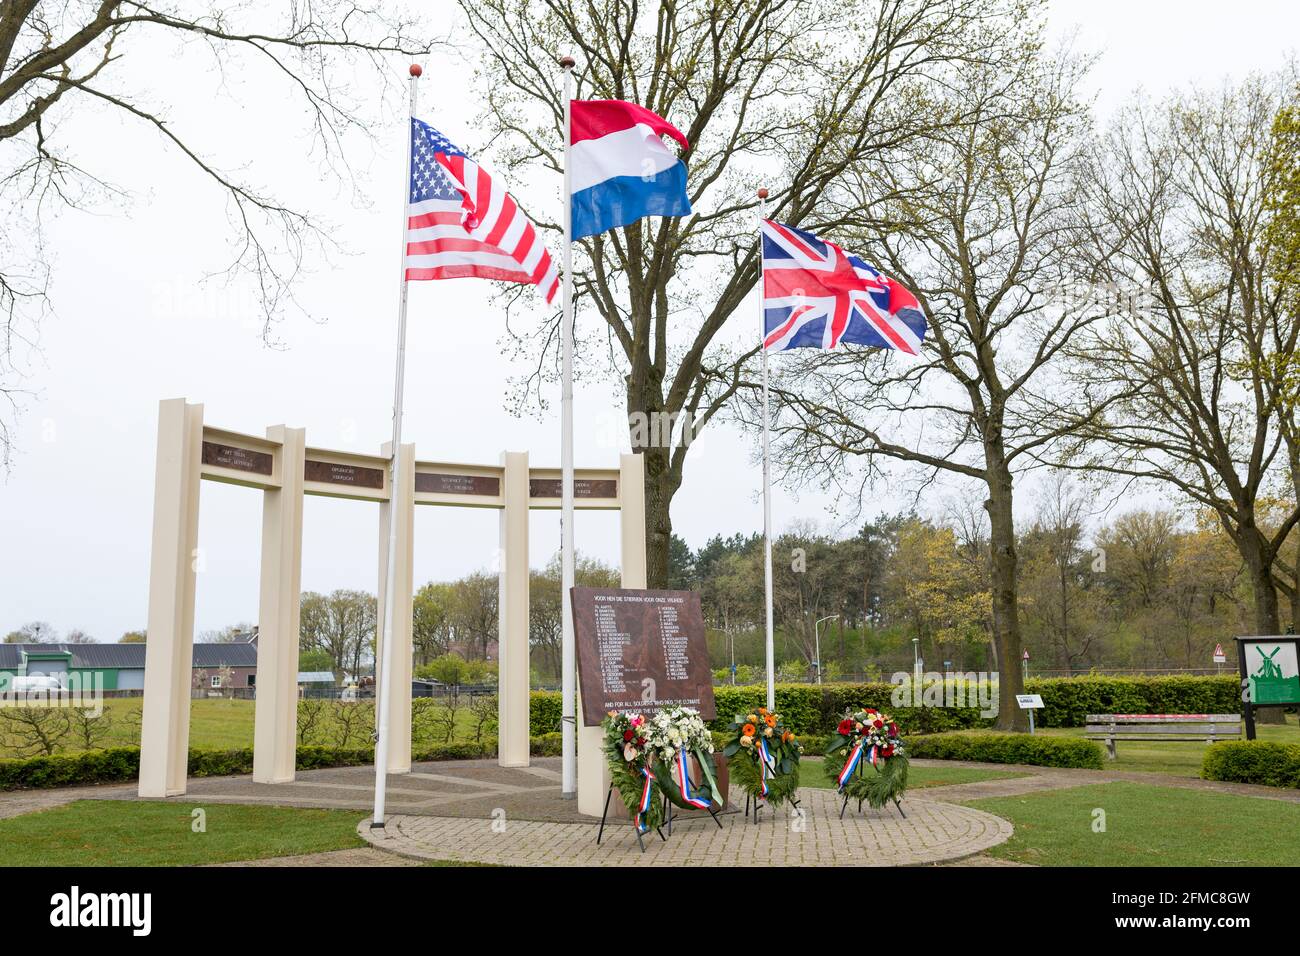 BANDIERA STATUNITENSE, britannica e olandese sventolando al monumento commemorativo per soldati caduti e civili durante la liberazione di Liessel, Paesi Bassi Foto Stock